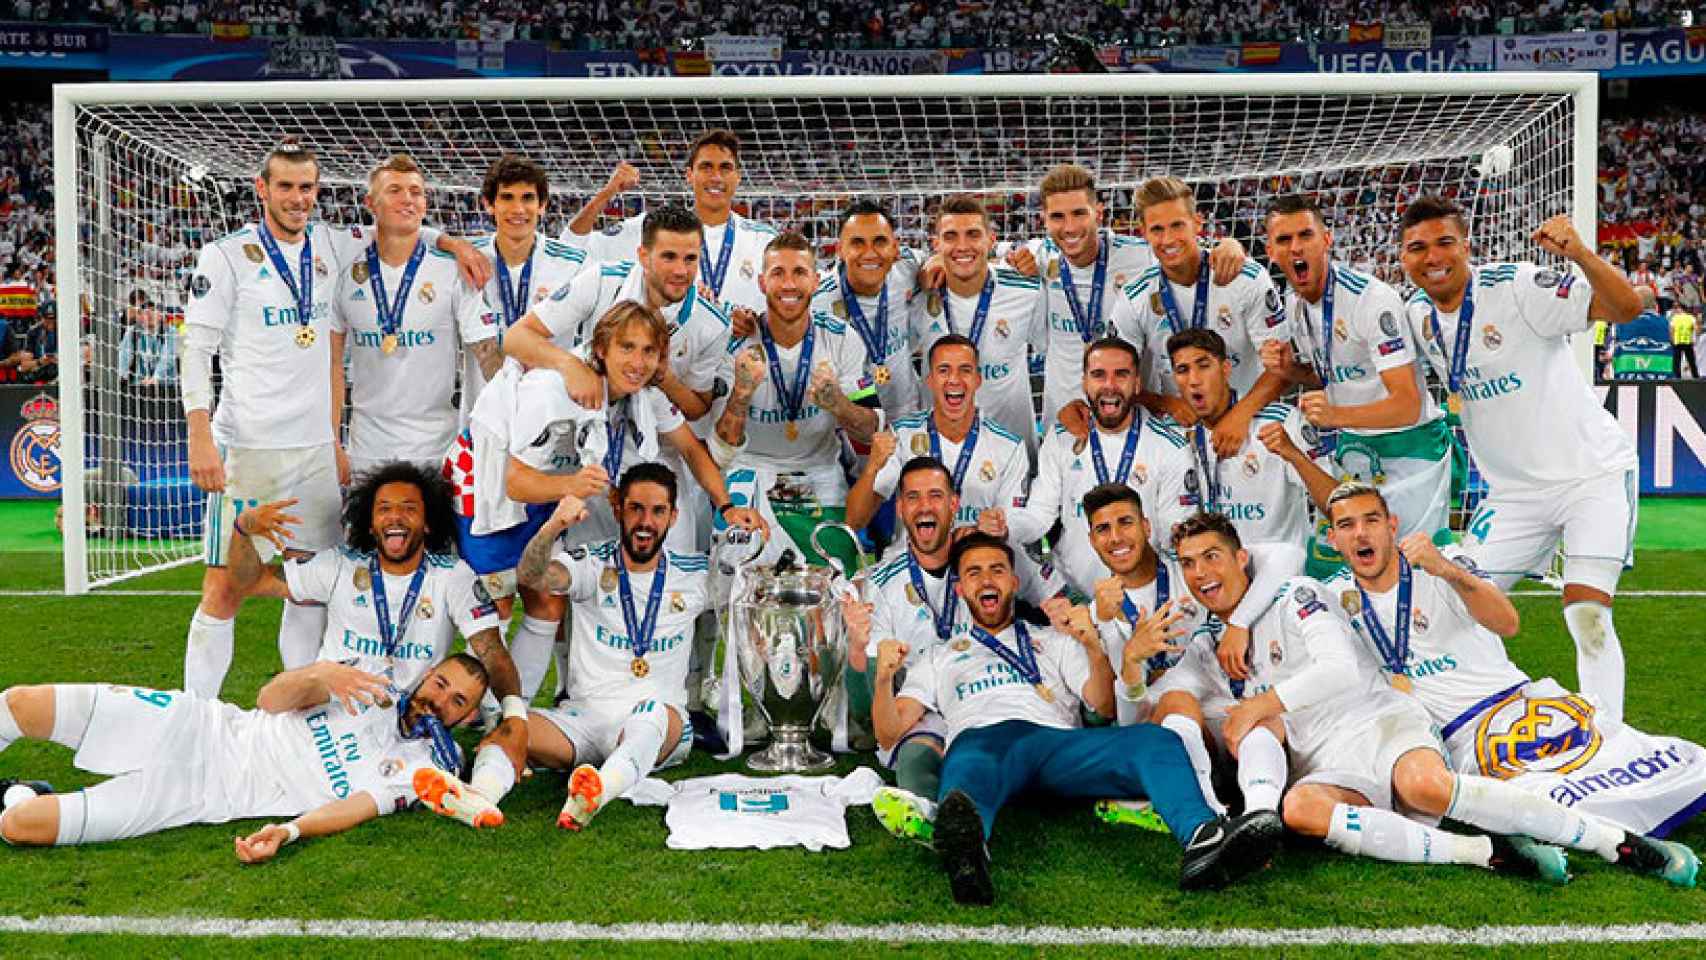 Cuantas Champions Tiene El Madrid "Champions 13": la camiseta de campeones del Real Madrid